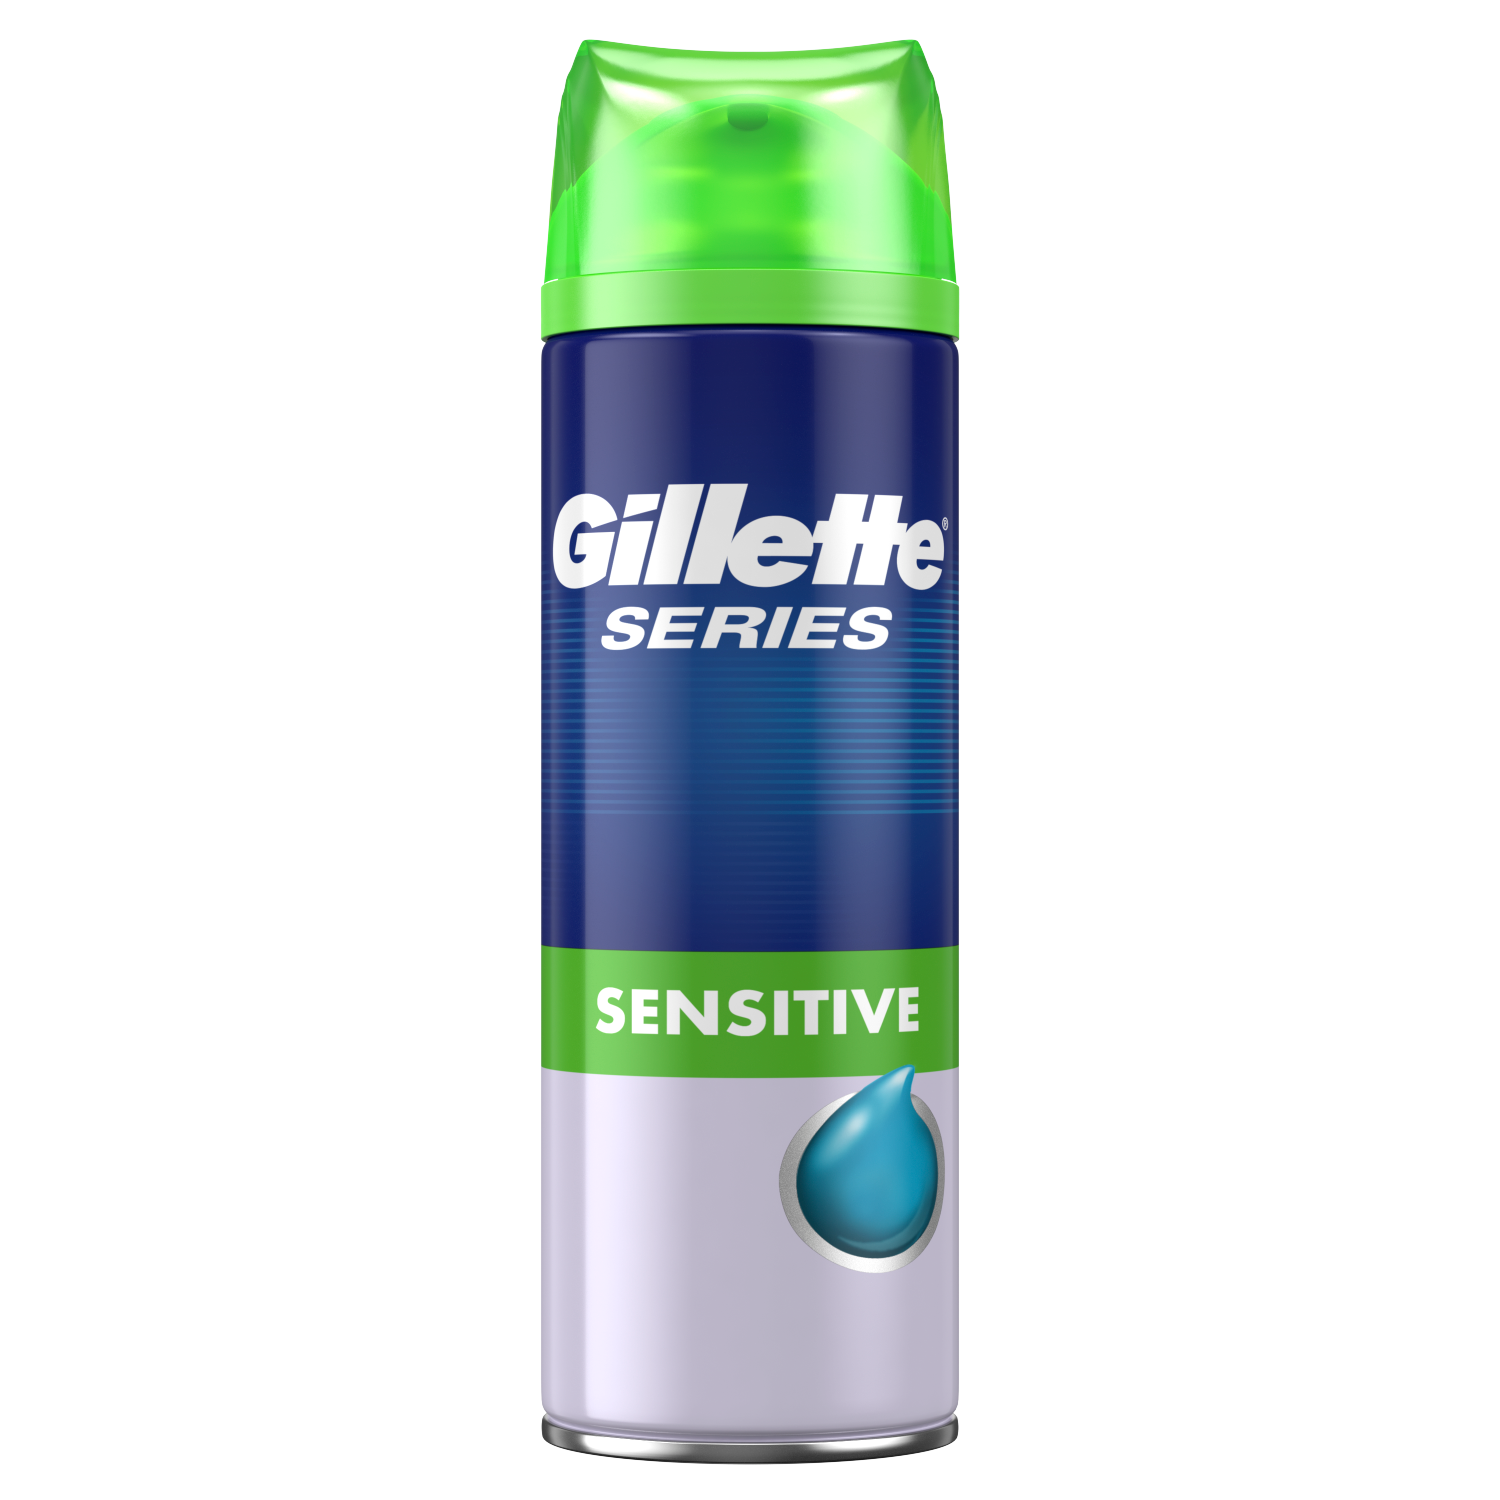 Gillette Series Sensitive гель для бритья для чувствительной кожи, 75 мл gillette series гель после бритья для чувствительной кожи 75 мл